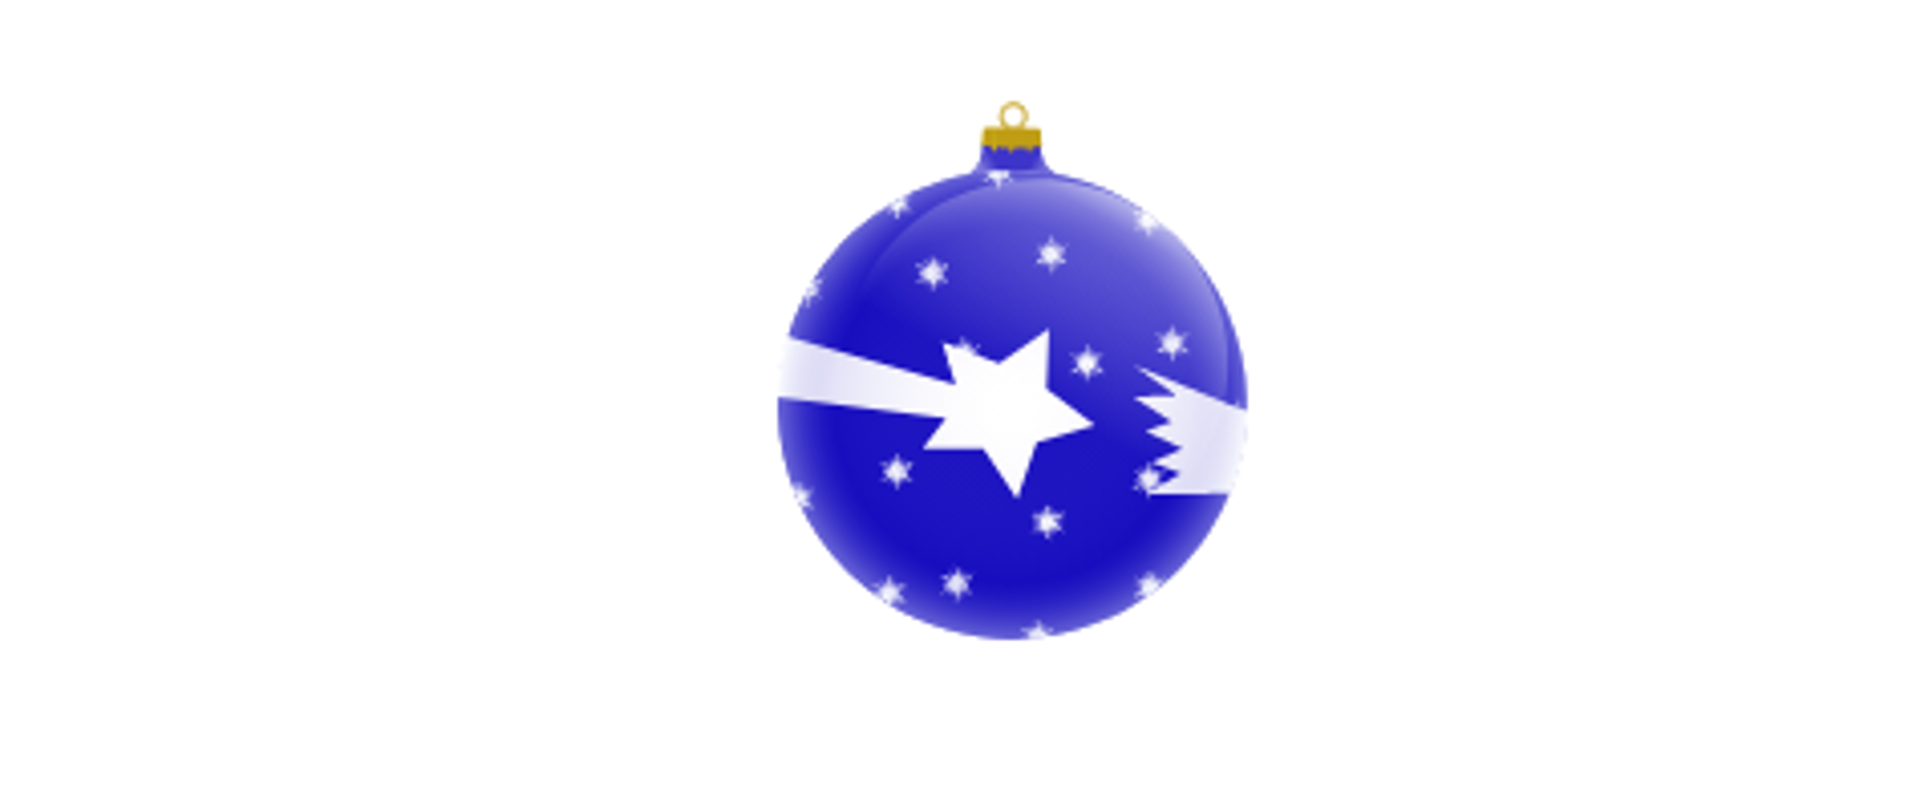 Niebieska bombka bożonarodzeniowa z białymi gwiazdkami